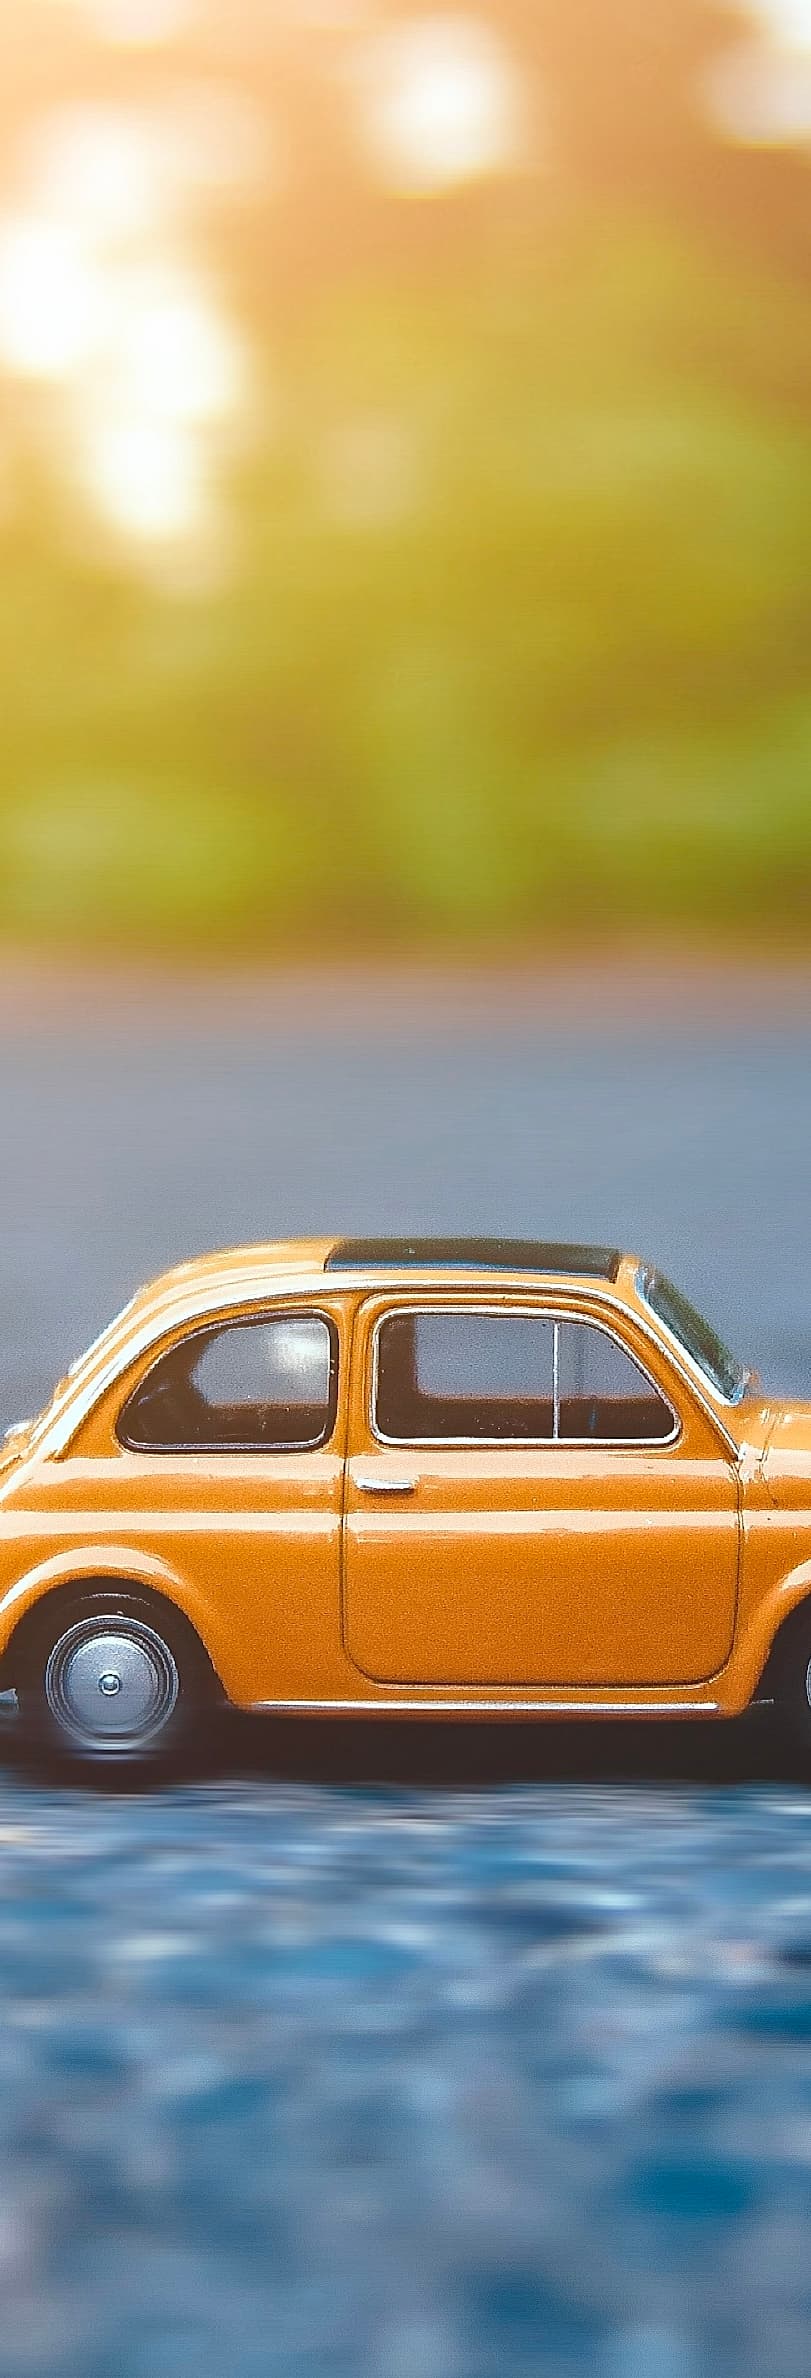 Un vieux modèle jaune de Fiat 500 jouet est posé sur la route